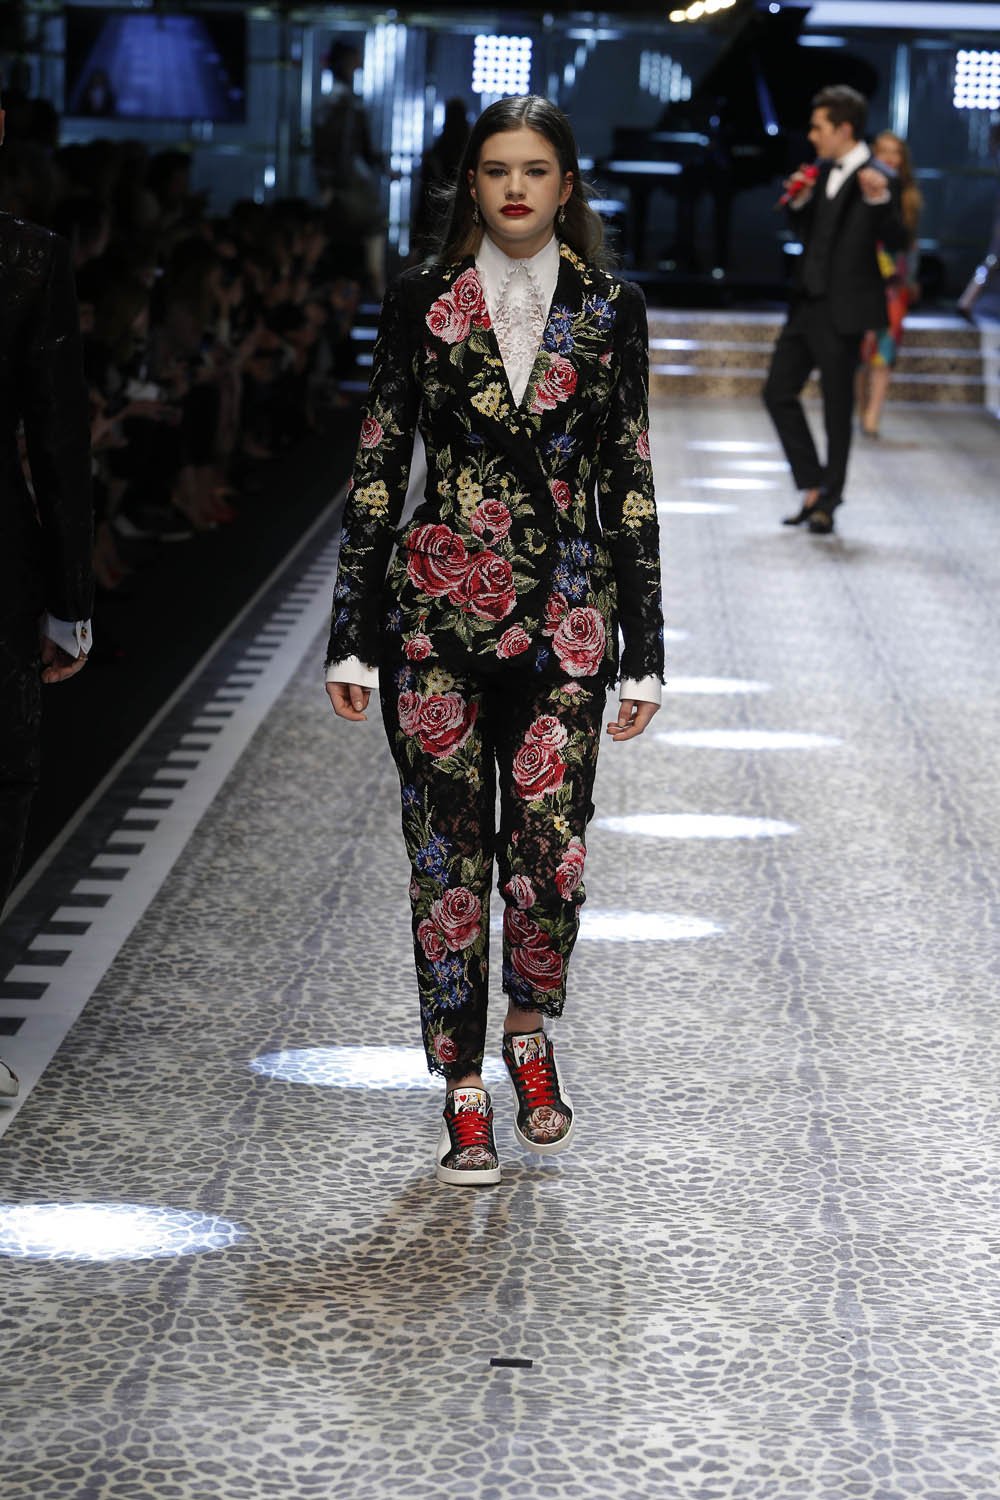 Dolce&Gabbana_women's fashion show fw17-18_Runway_images (60)